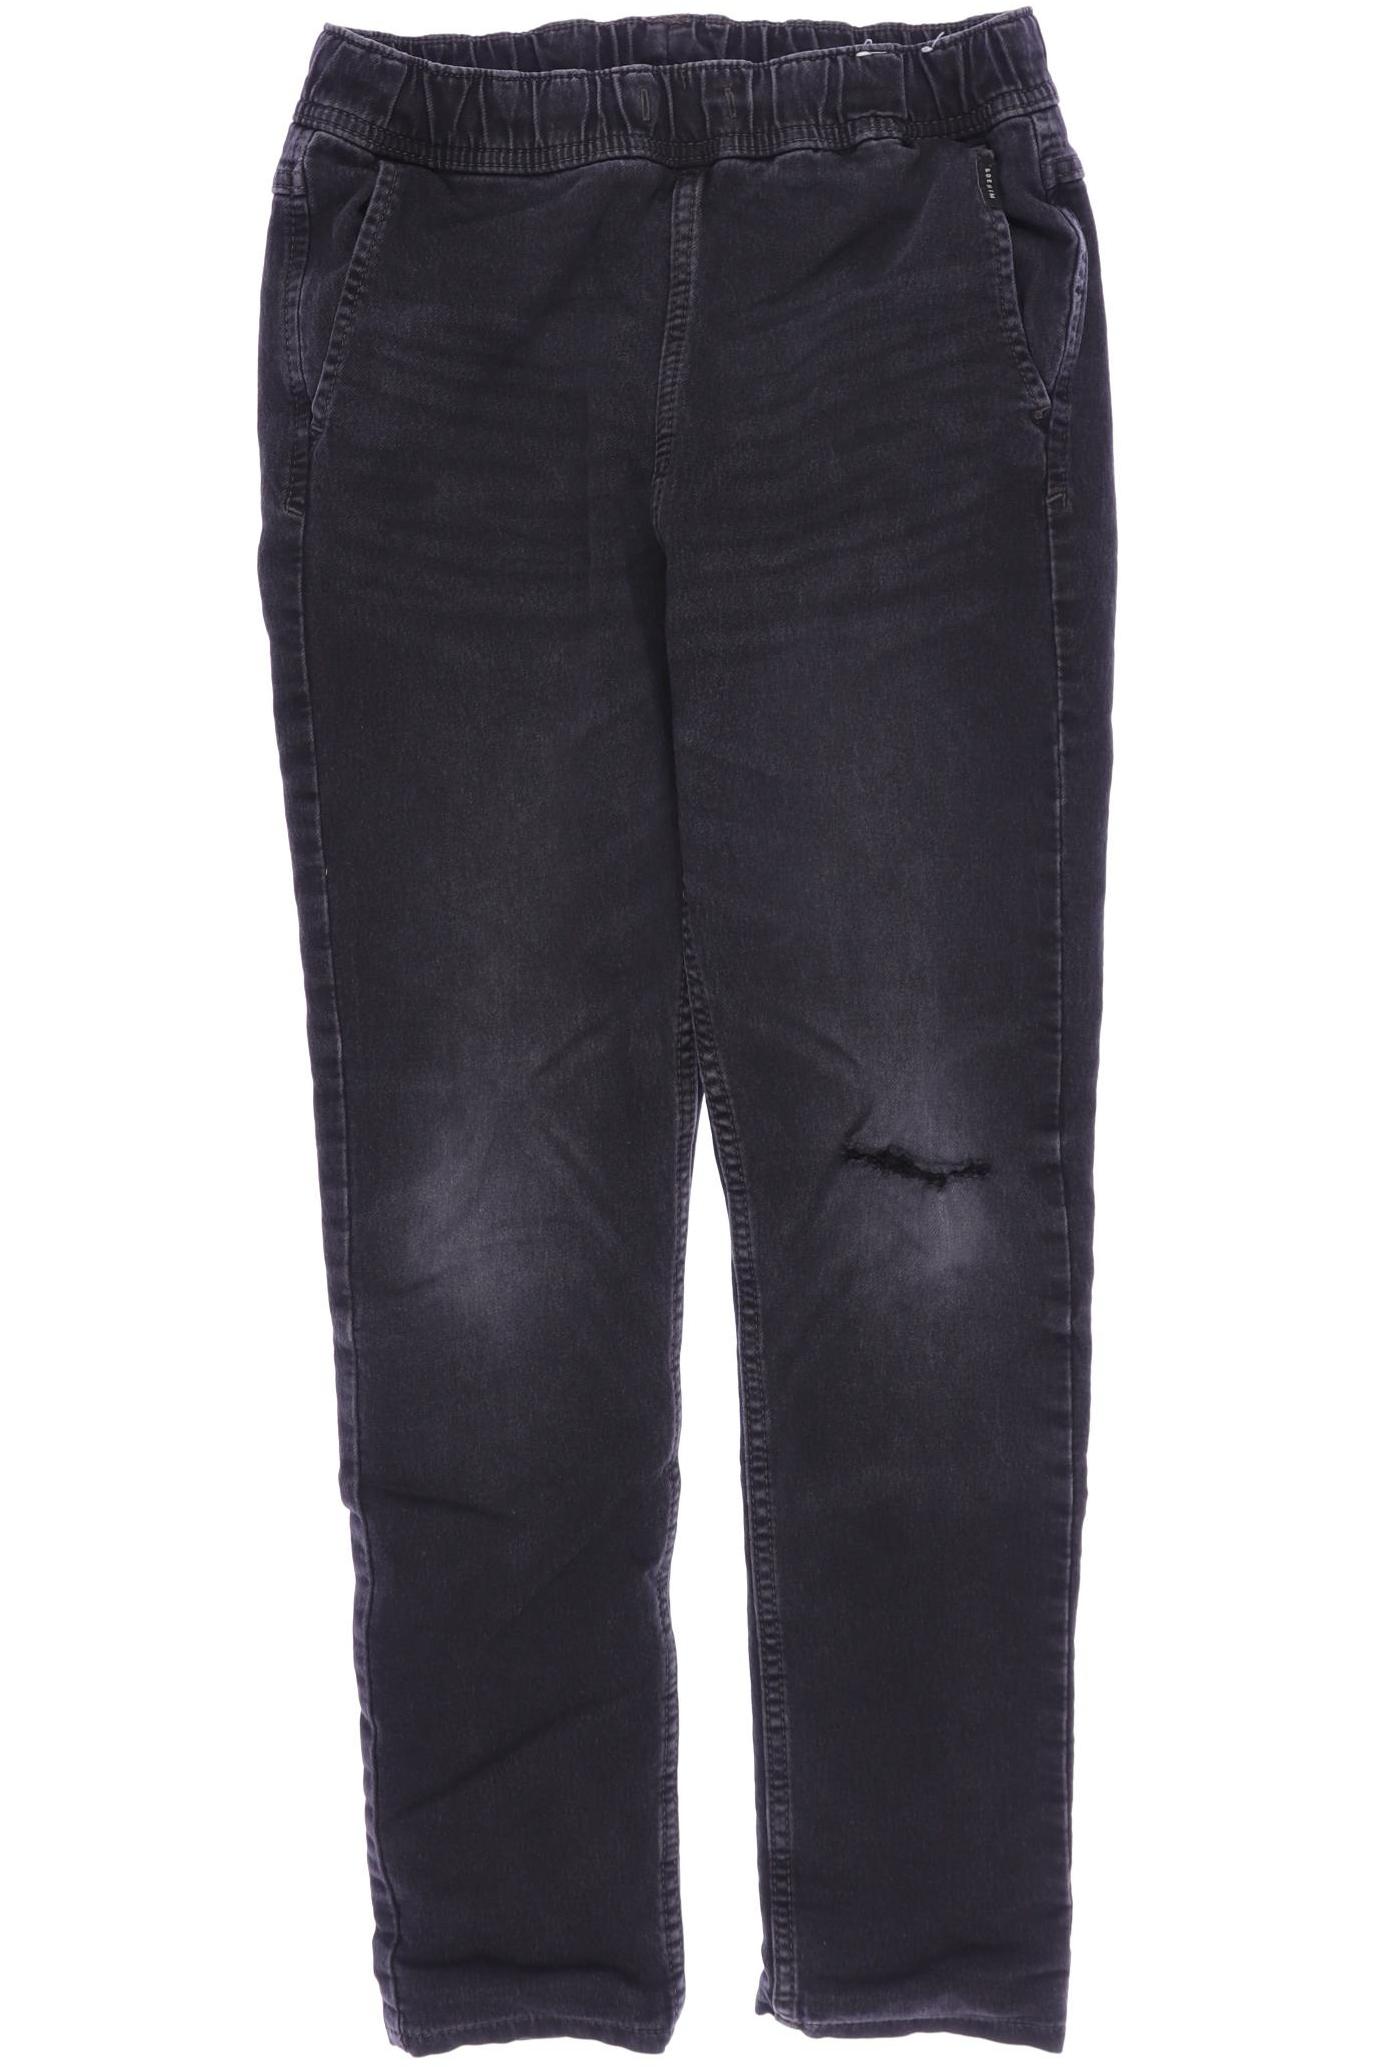 H&M Jungen Jeans, schwarz von H&M